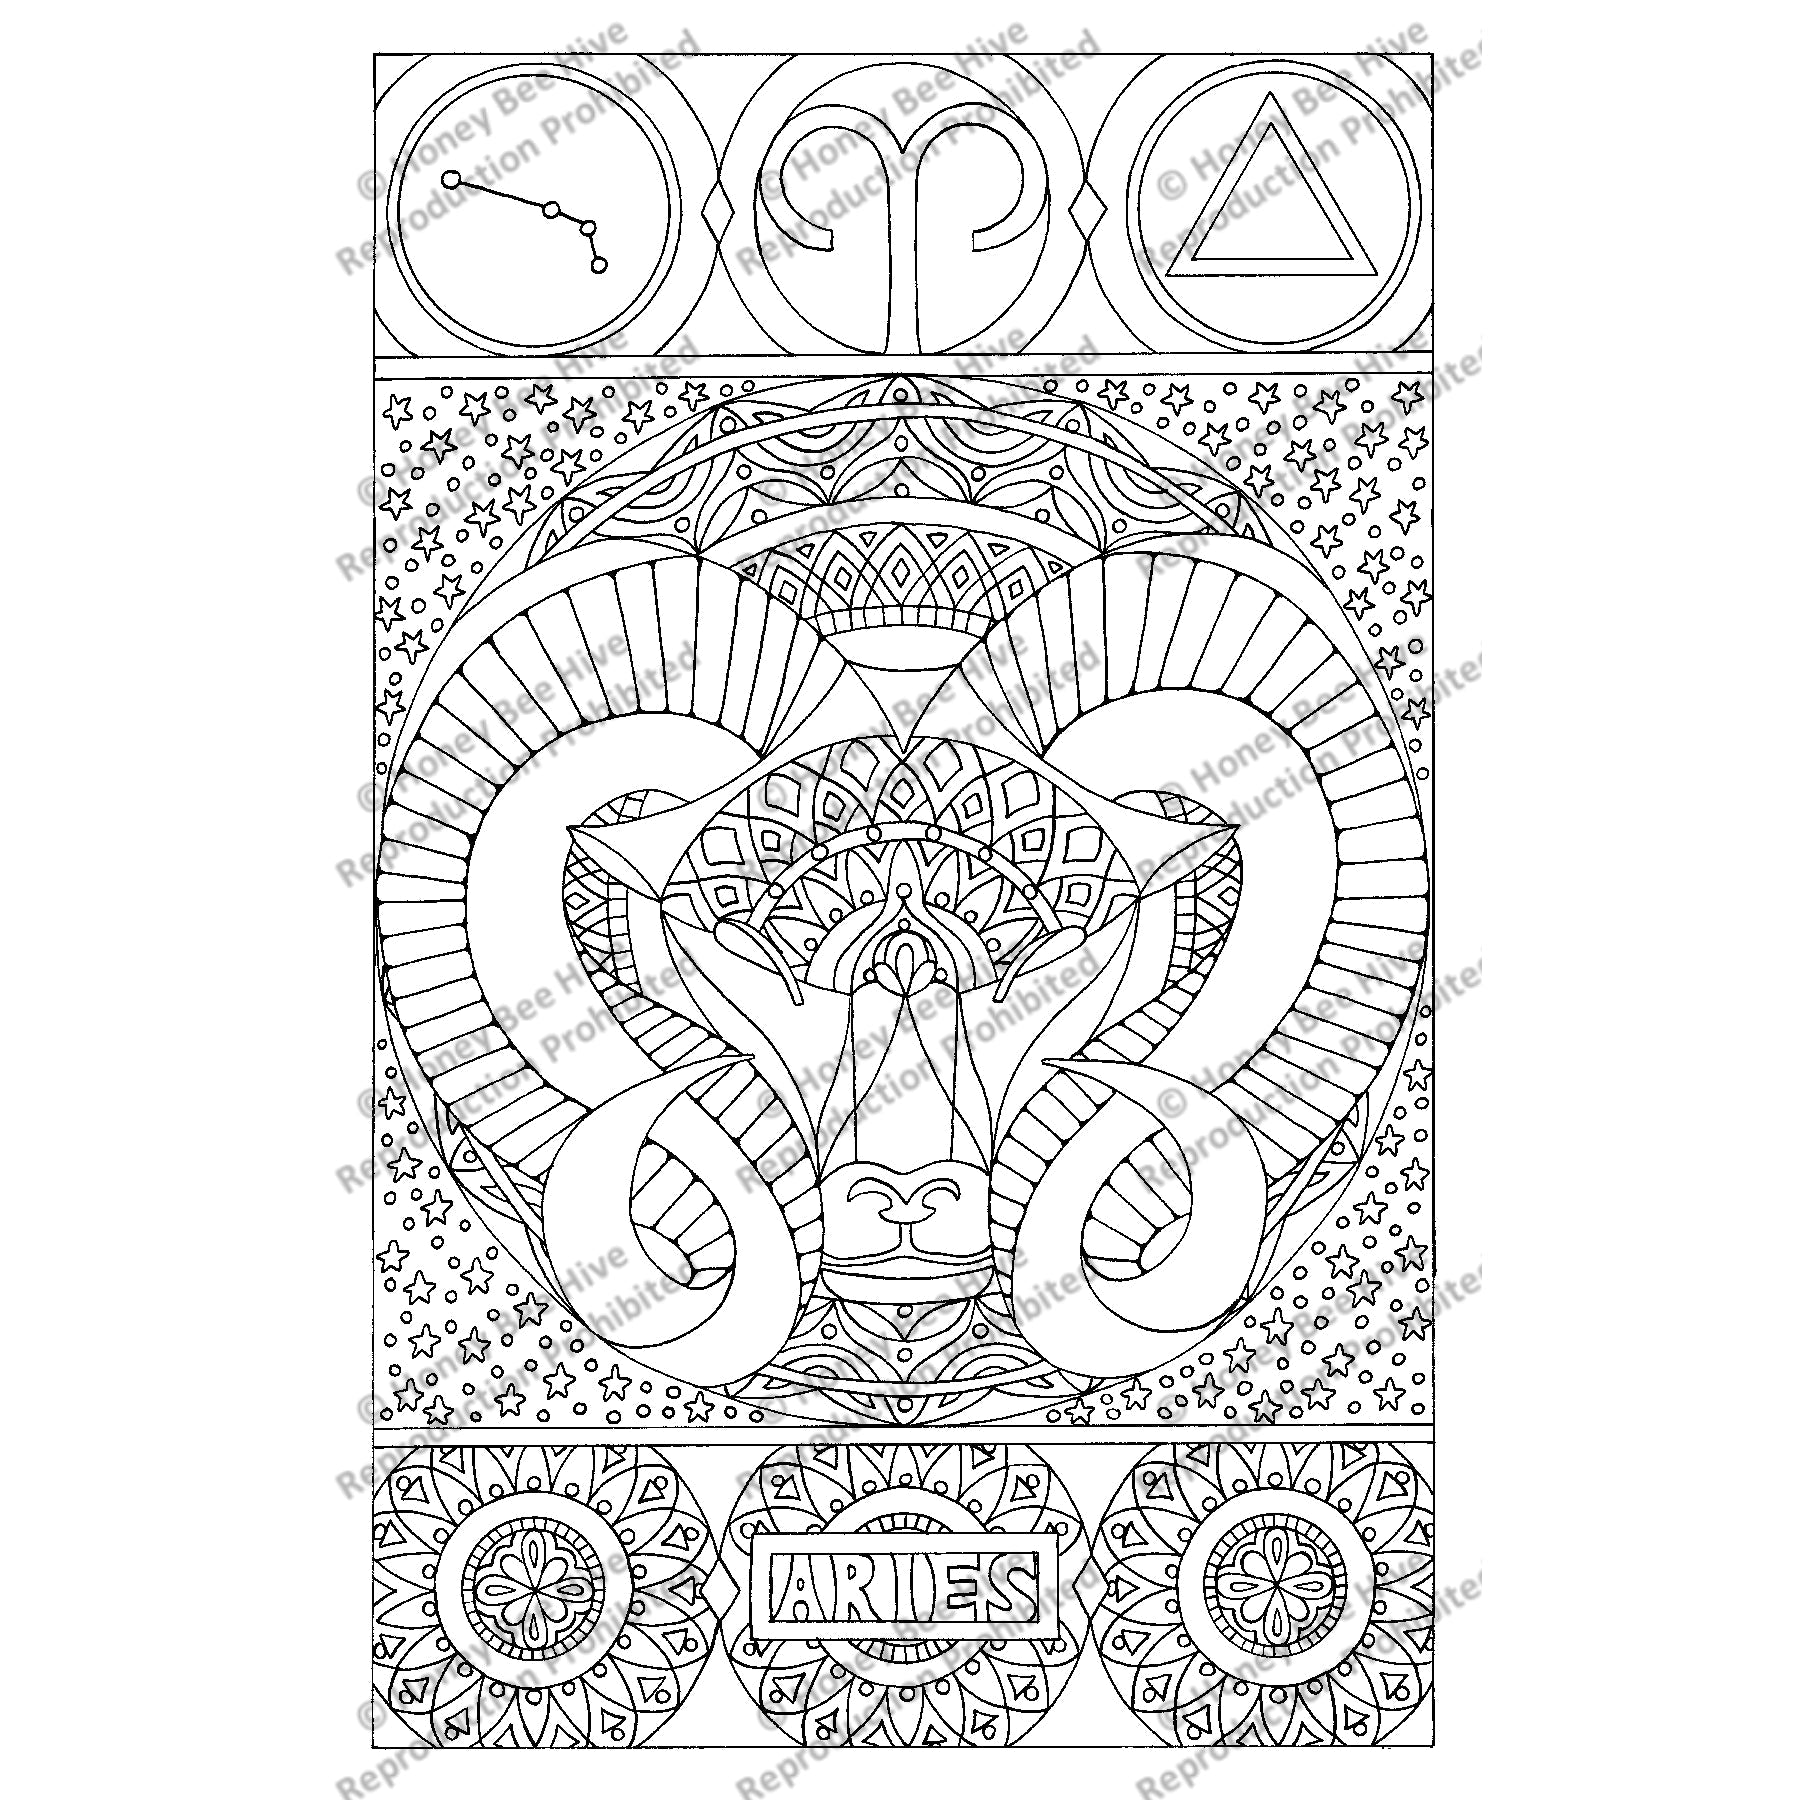 Aries, rug hooking pattern